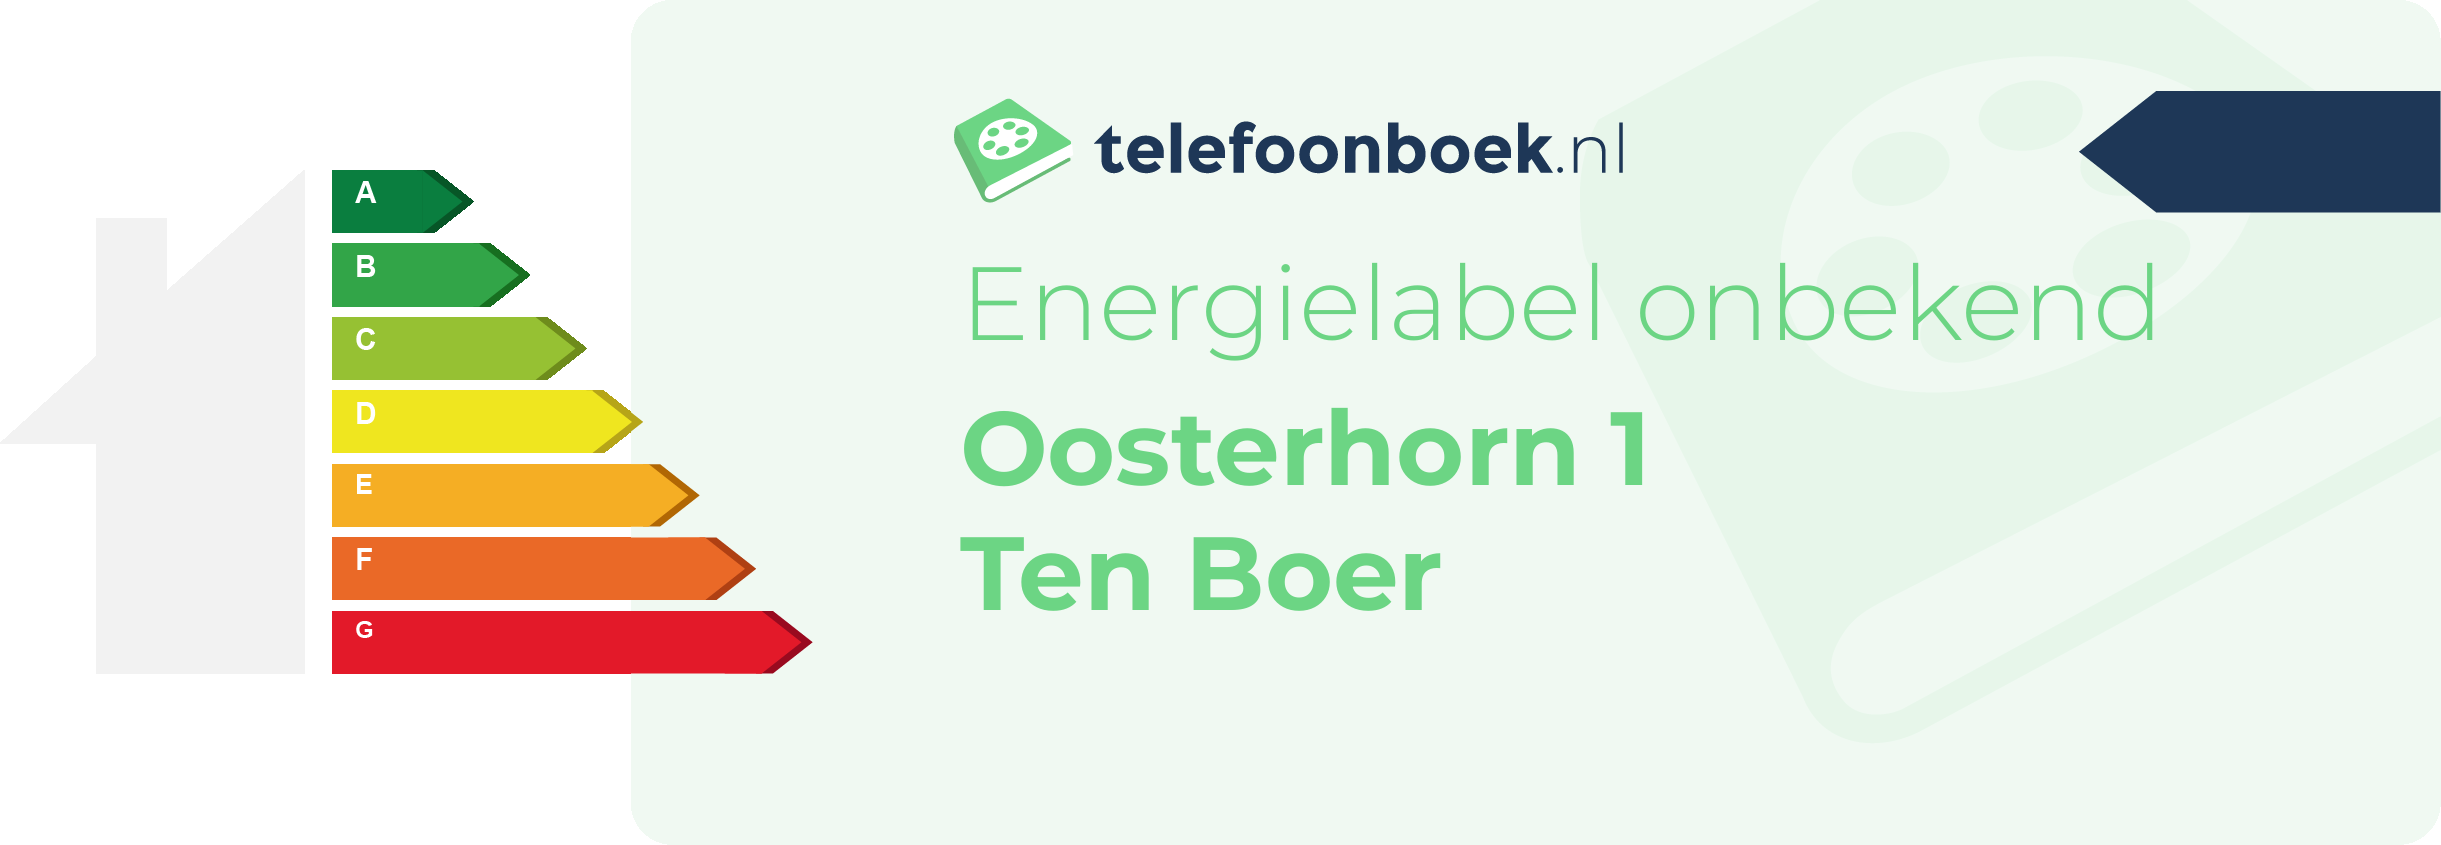 Energielabel Oosterhorn 1 Ten Boer